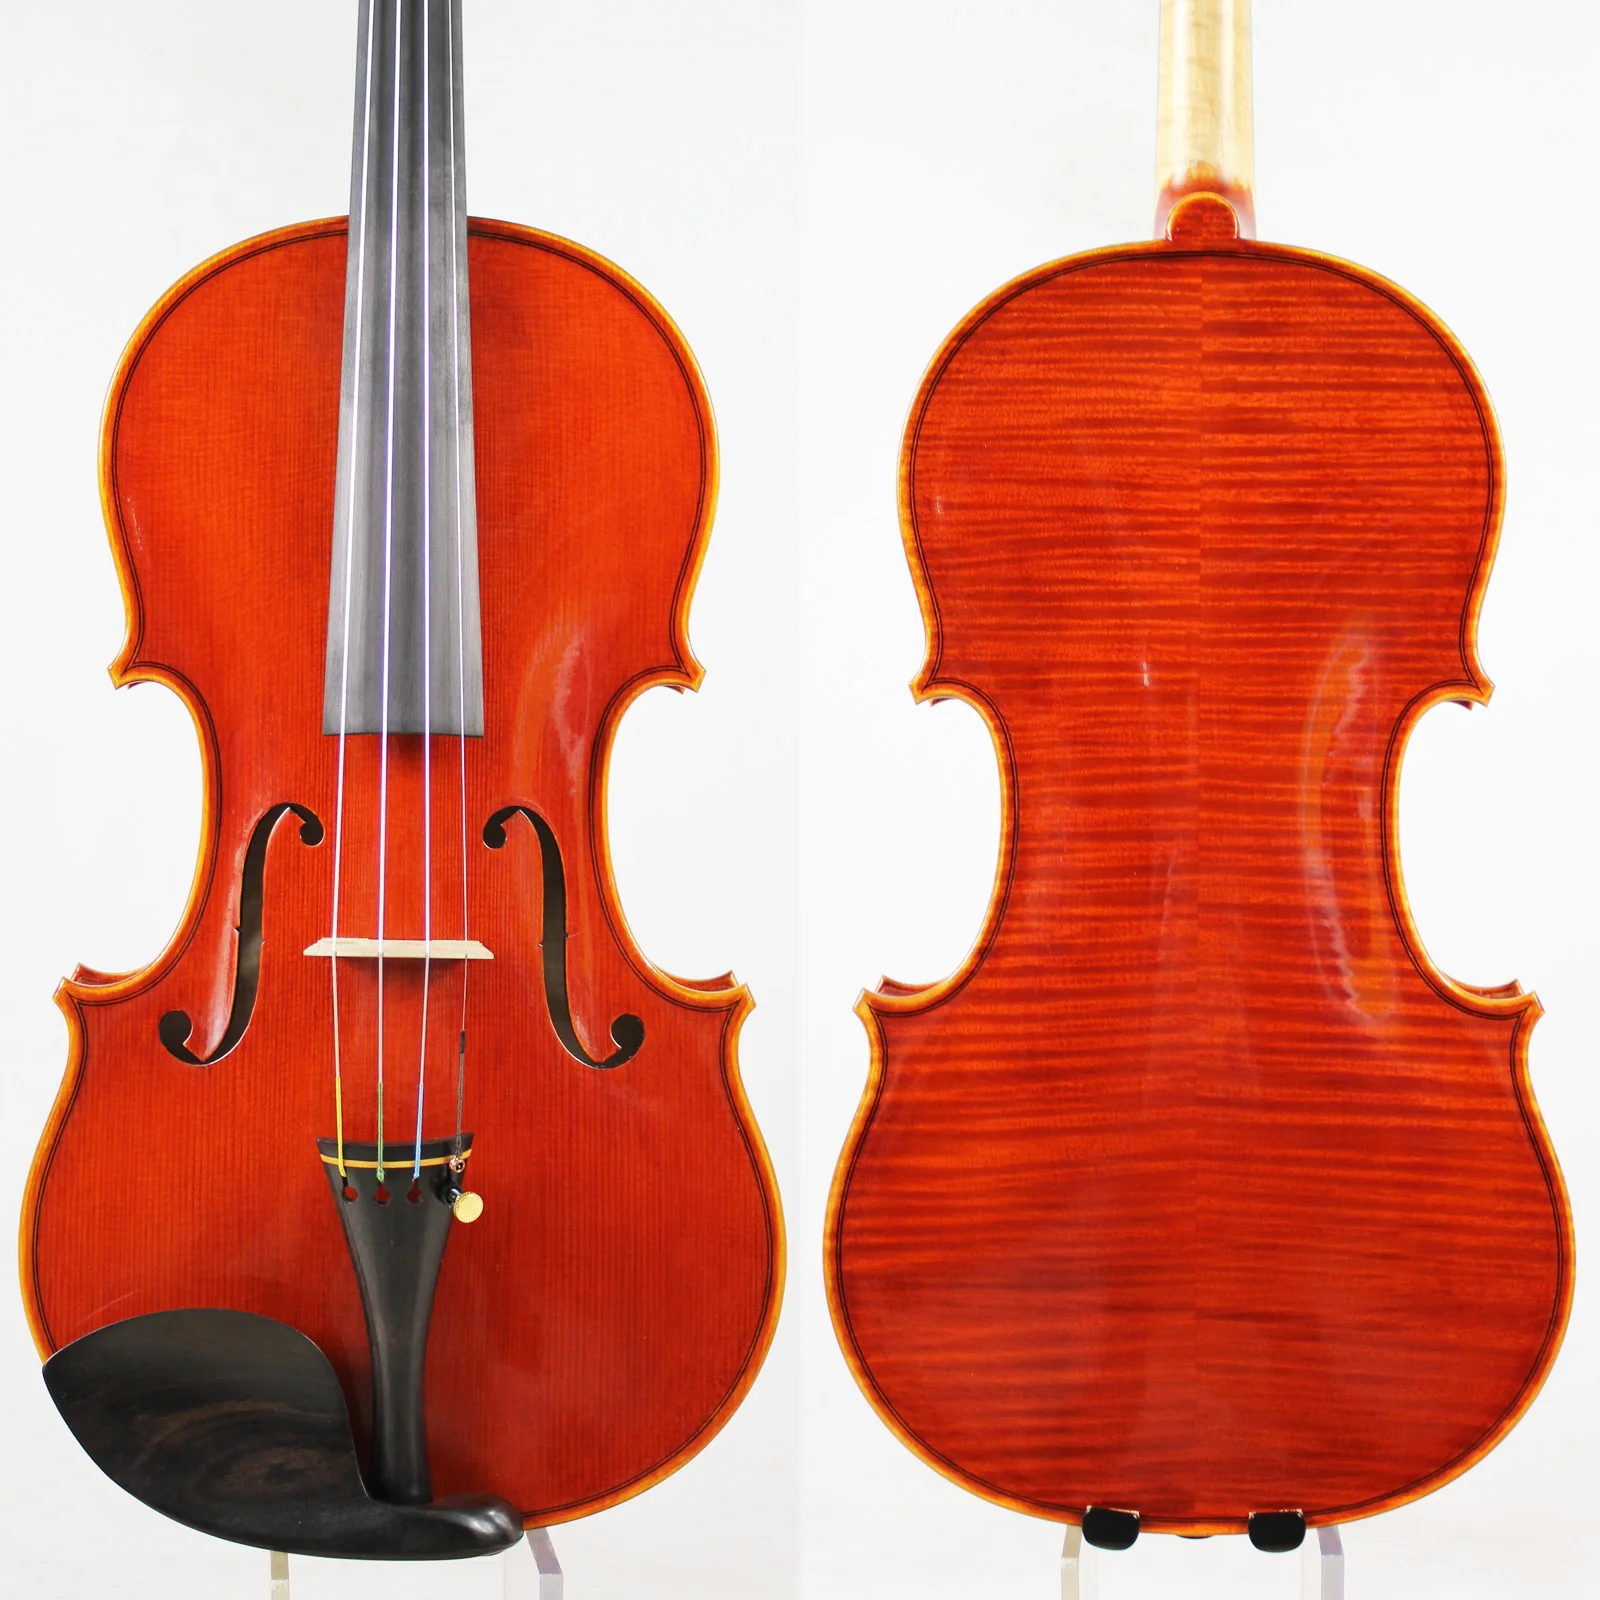 Мастер скрипки! Европейское дерево! Экземпляр Antonio Stradivari! Сильный и глубокий тон! Бесплатная доставка! Despiau мост! Доминантные 135B струны